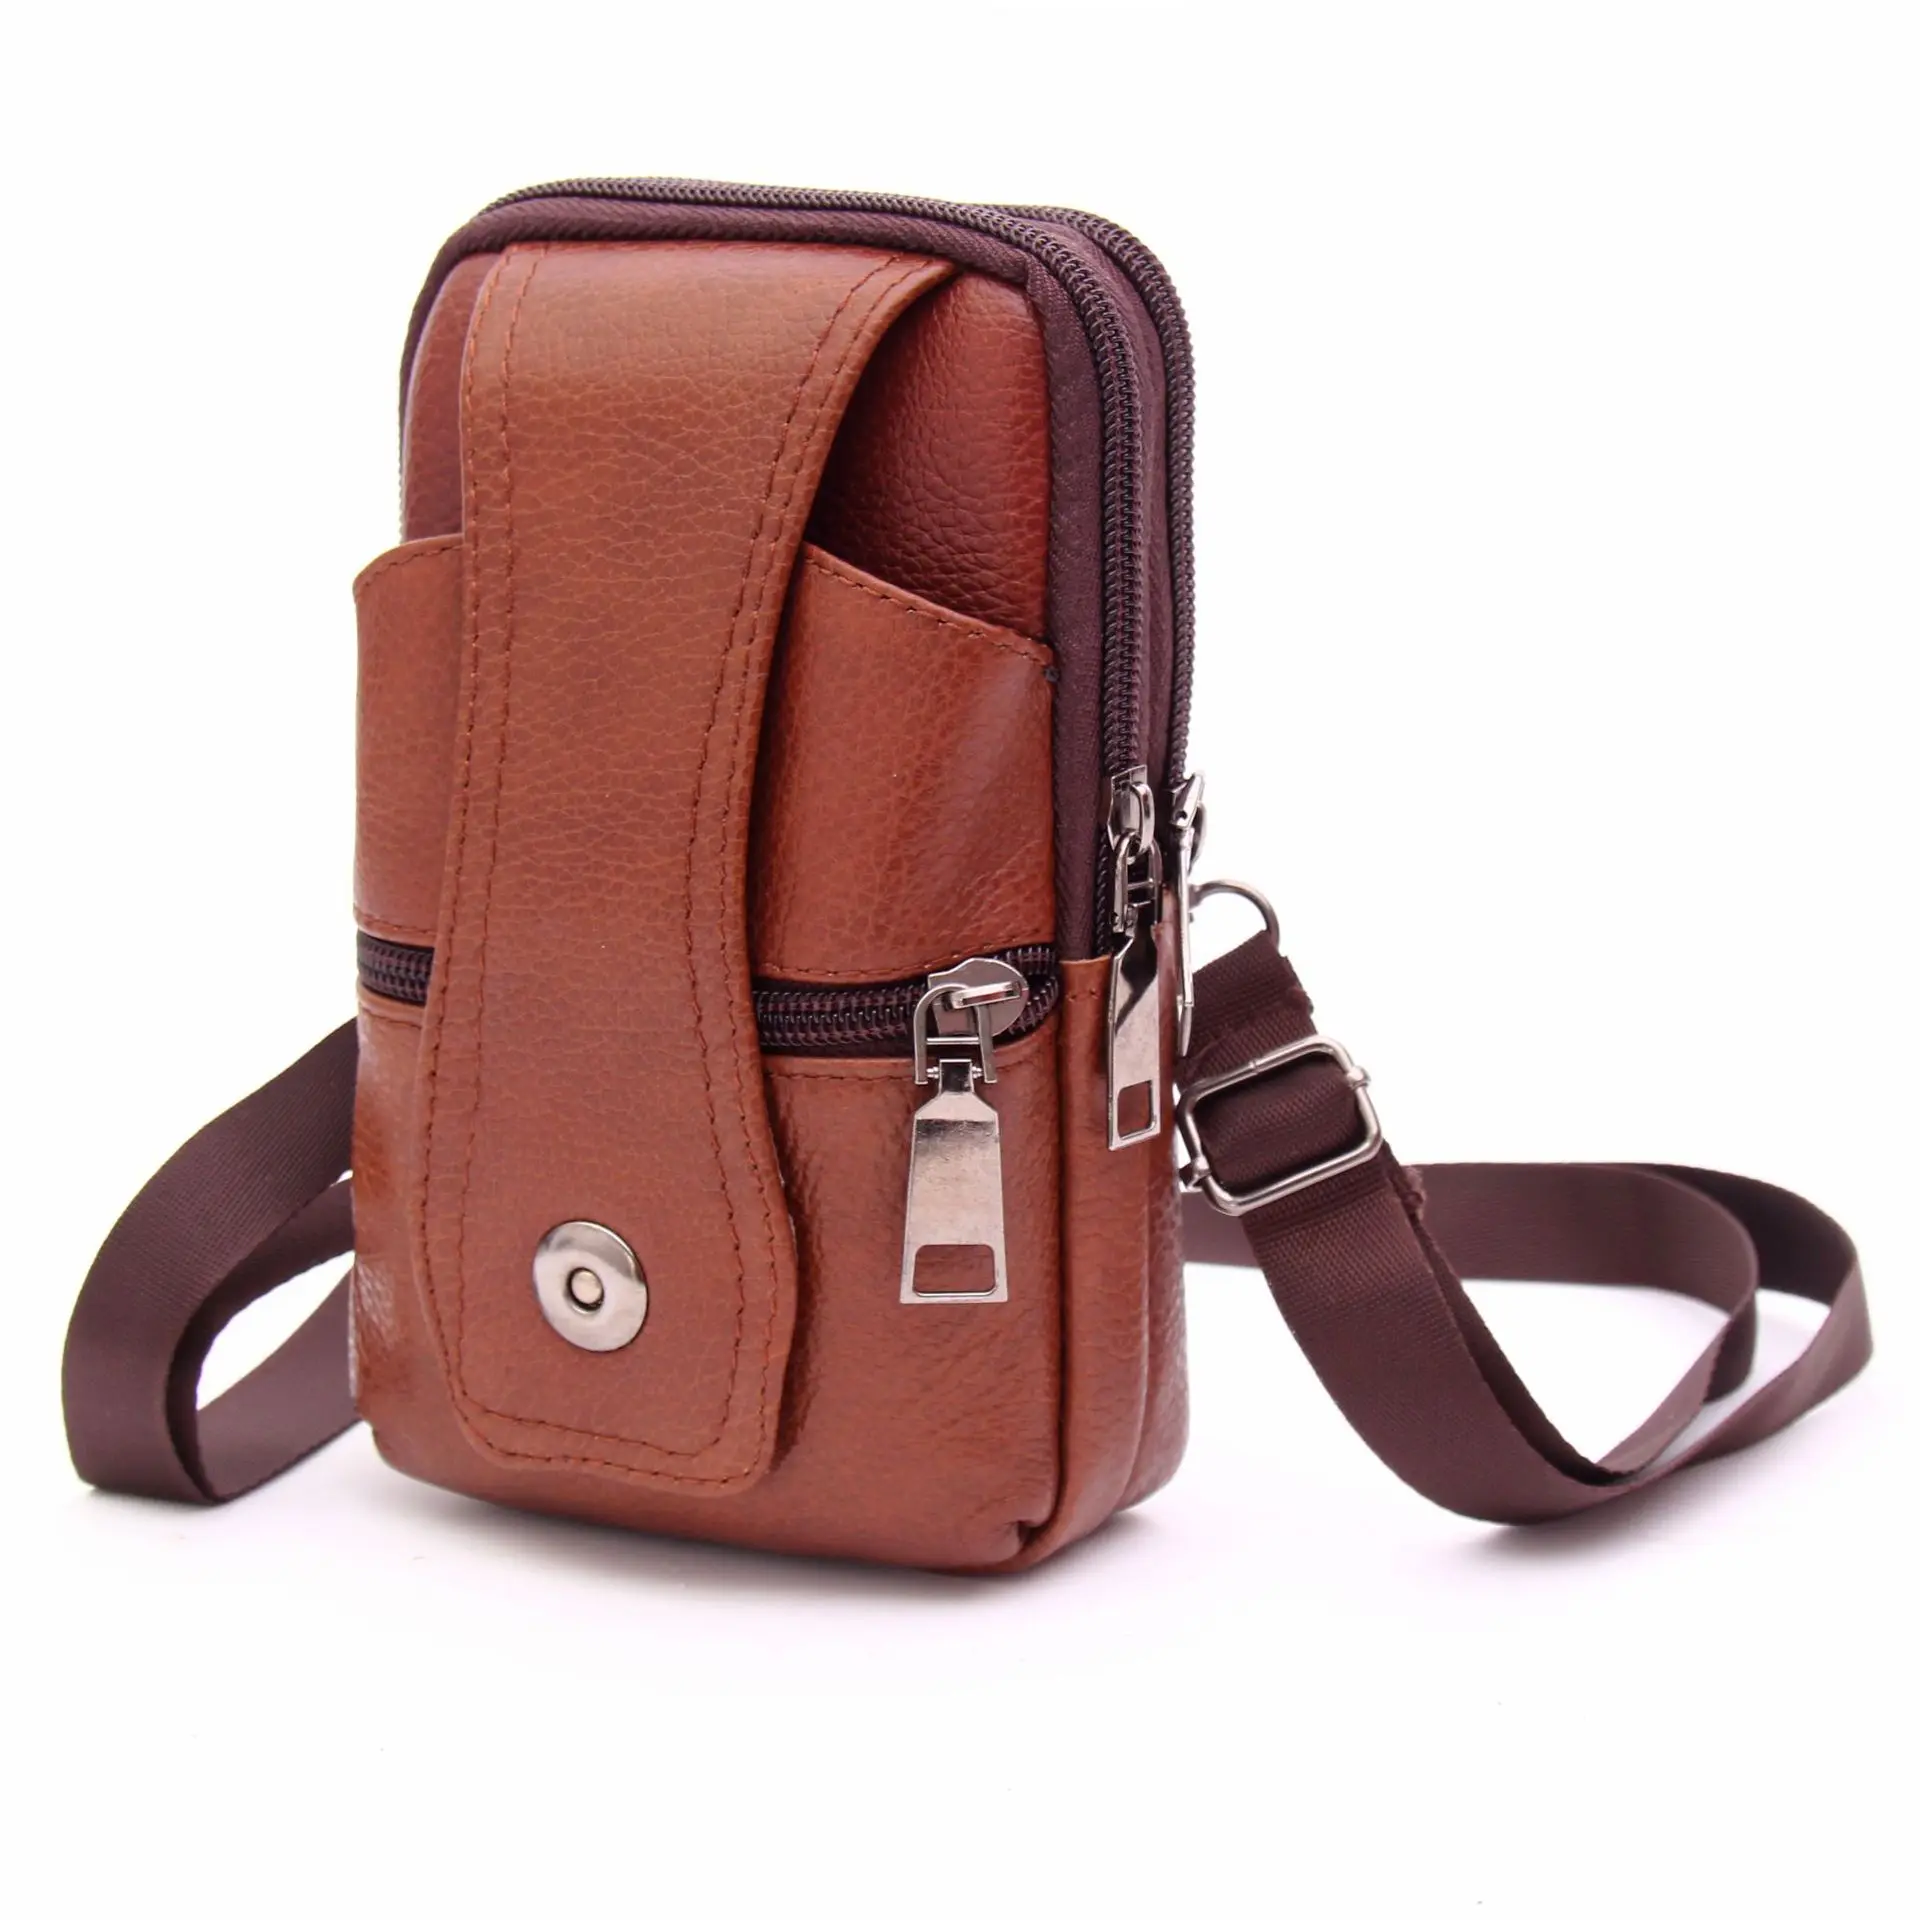 

Business Genuine Leather Phone Bag Fanny Pack Men Waist Bag Men's Belt Bag Man Sports Shoulder Cross Bag Money Pocket Bolsos Sac